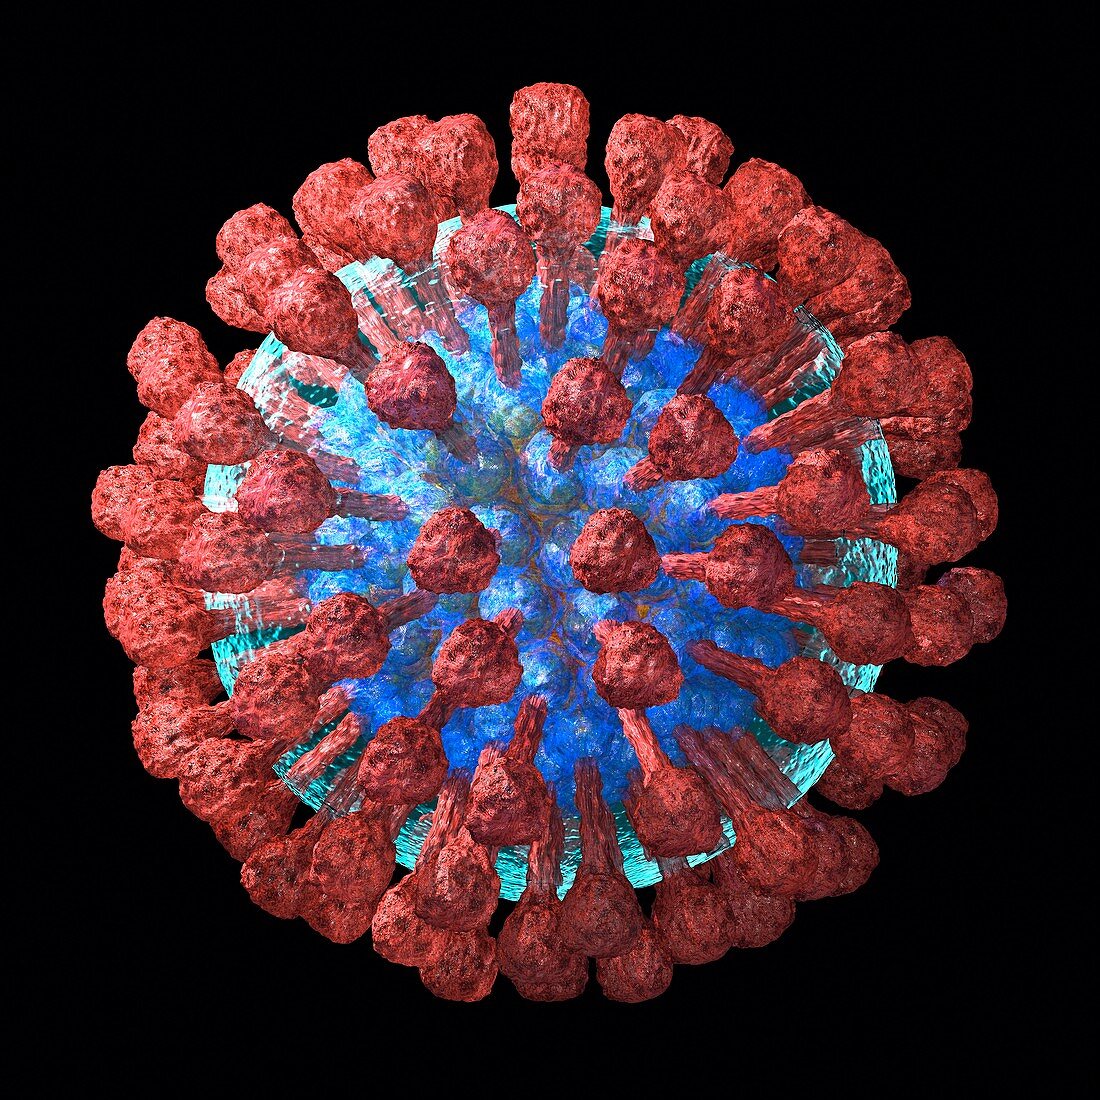 Lassa virus particle,artwork